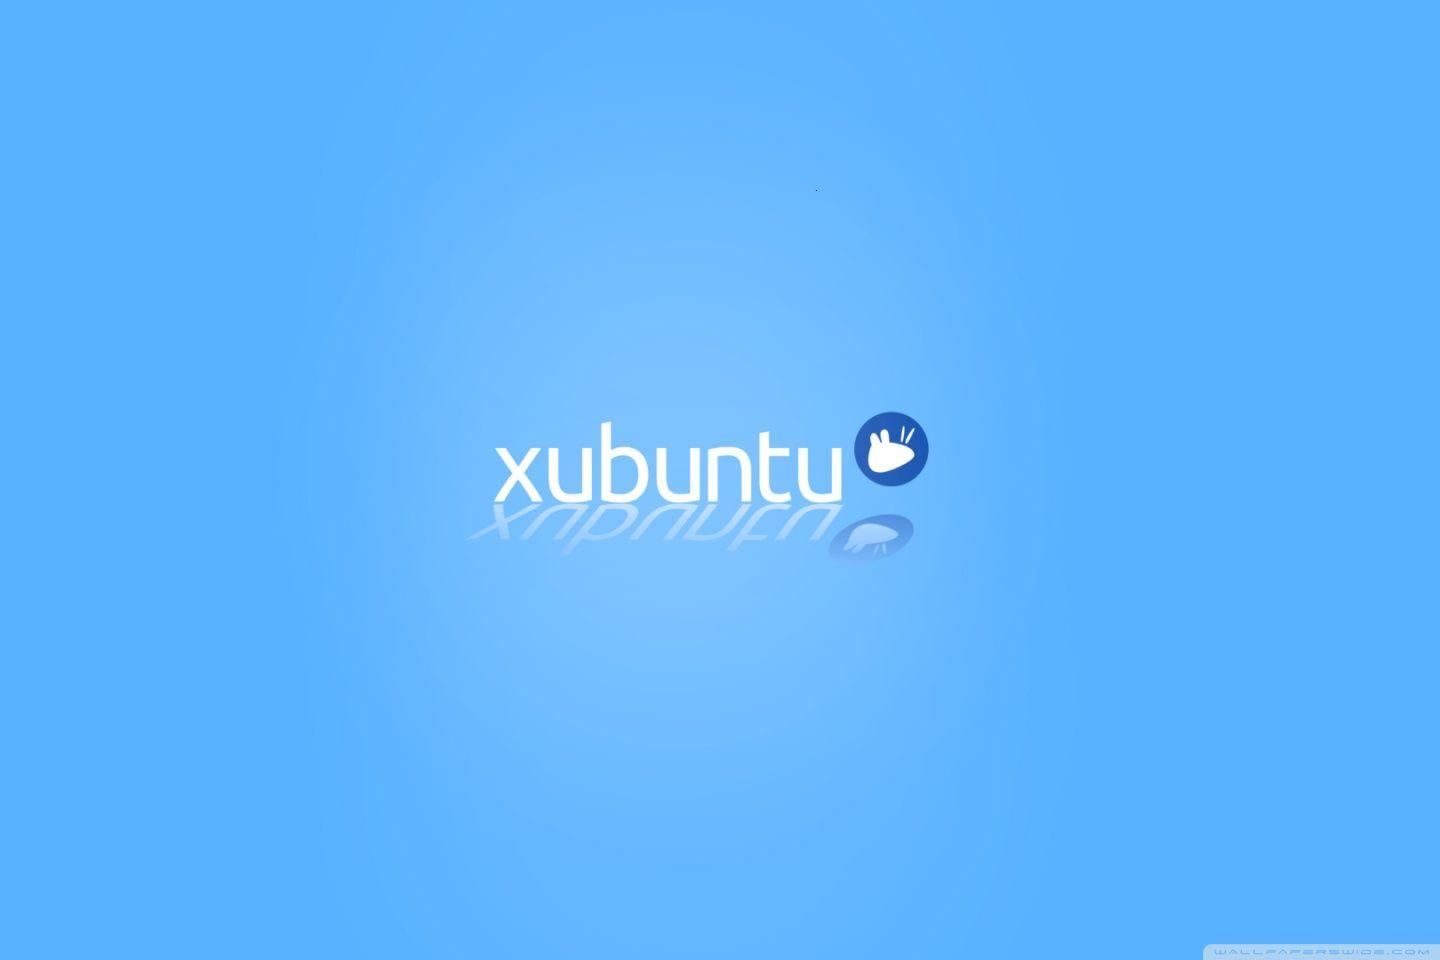 Xubuntu Logo - Xubuntu logo 2.0 ❤ 4K HD Desktop Wallpaper for 4K Ultra HD TV ...